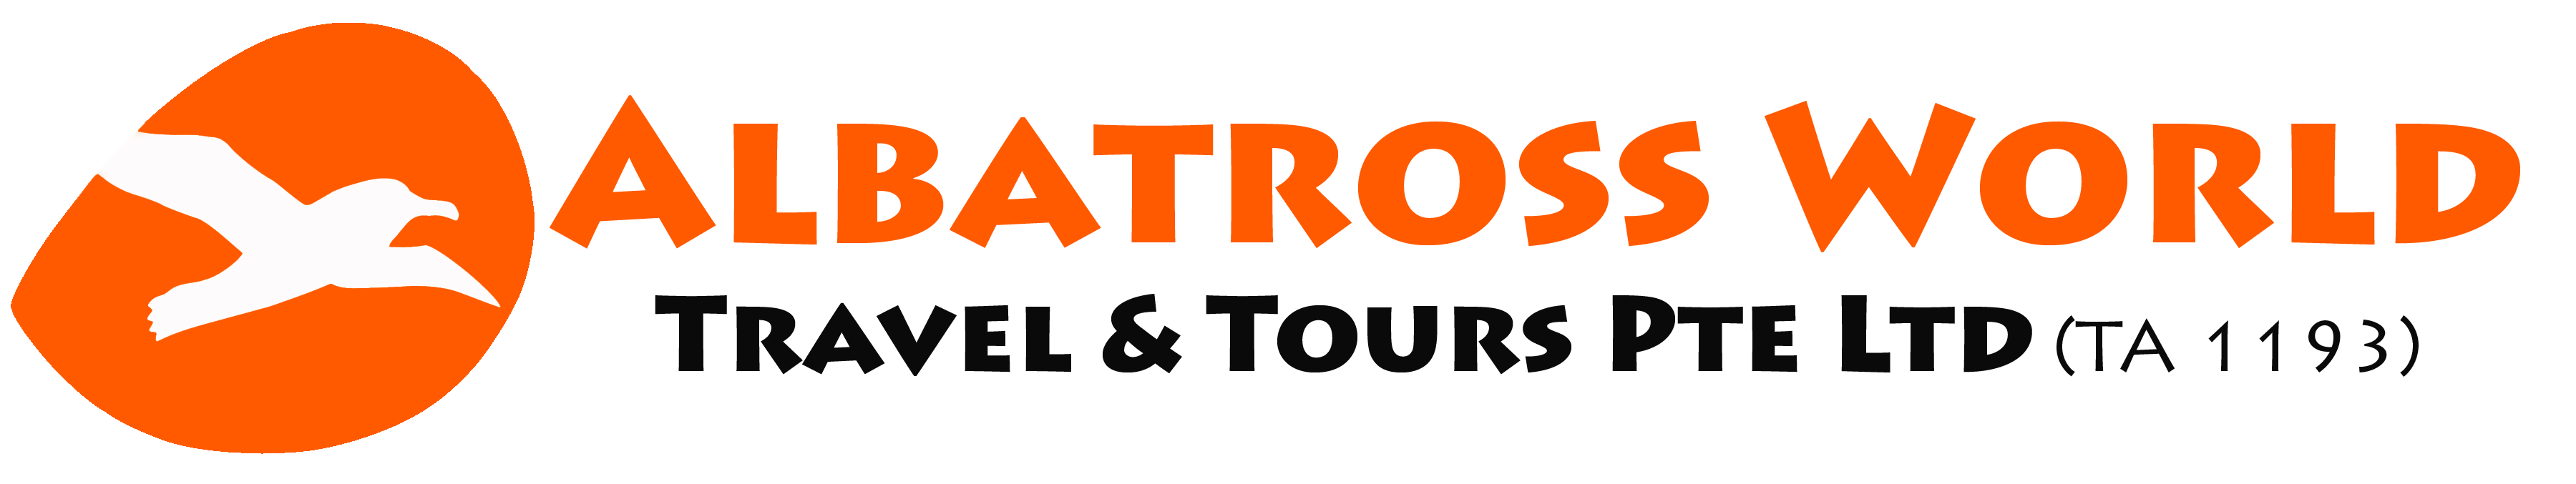 Albatross World Travel & Tours Pte Ltd